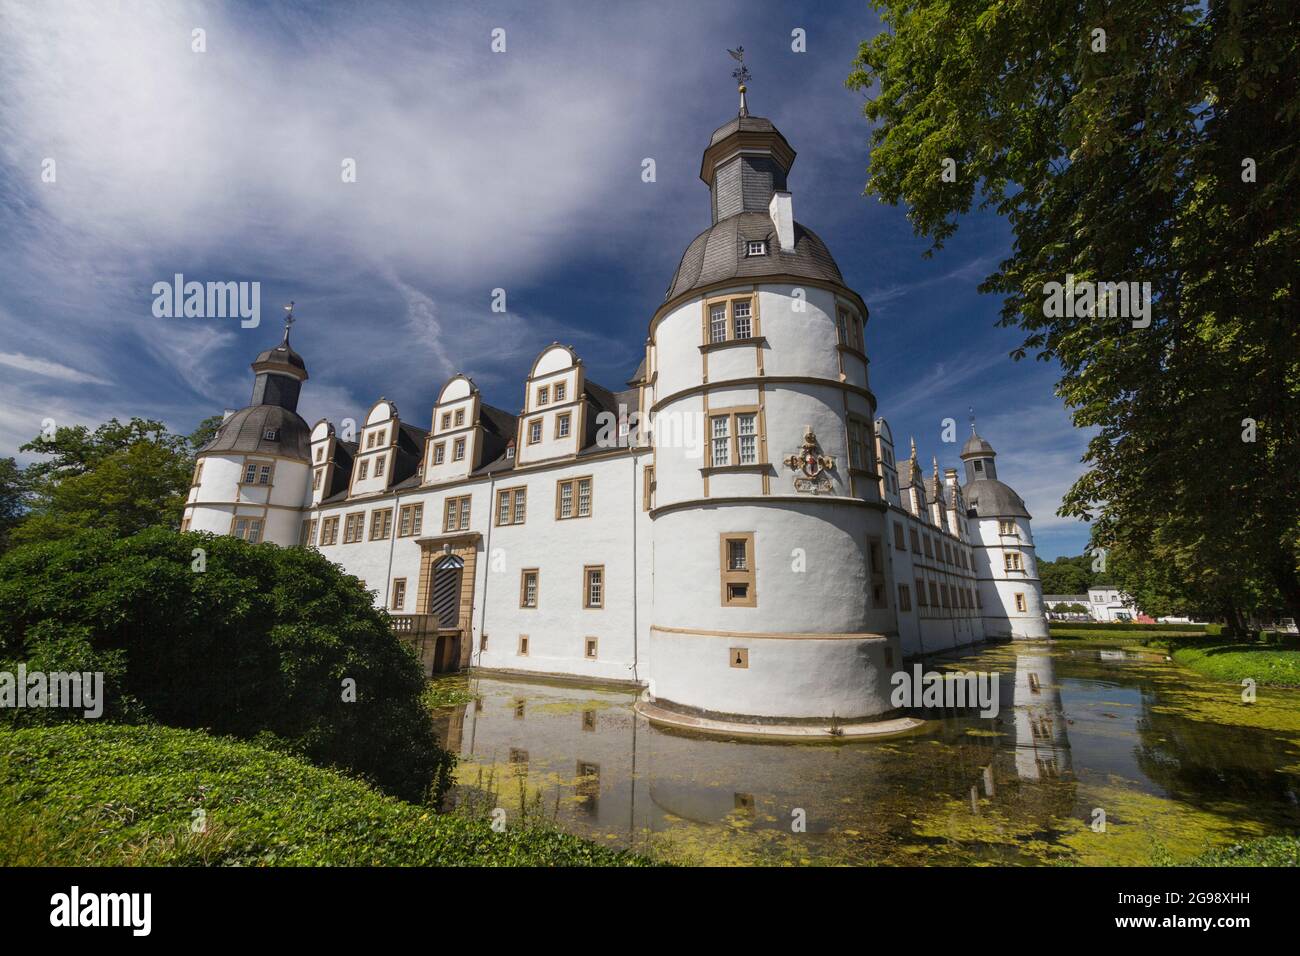 Schloss Neuhaus (Schloß Neuhaus), Paderborn, Deutschland Stockfotografie -  Alamy